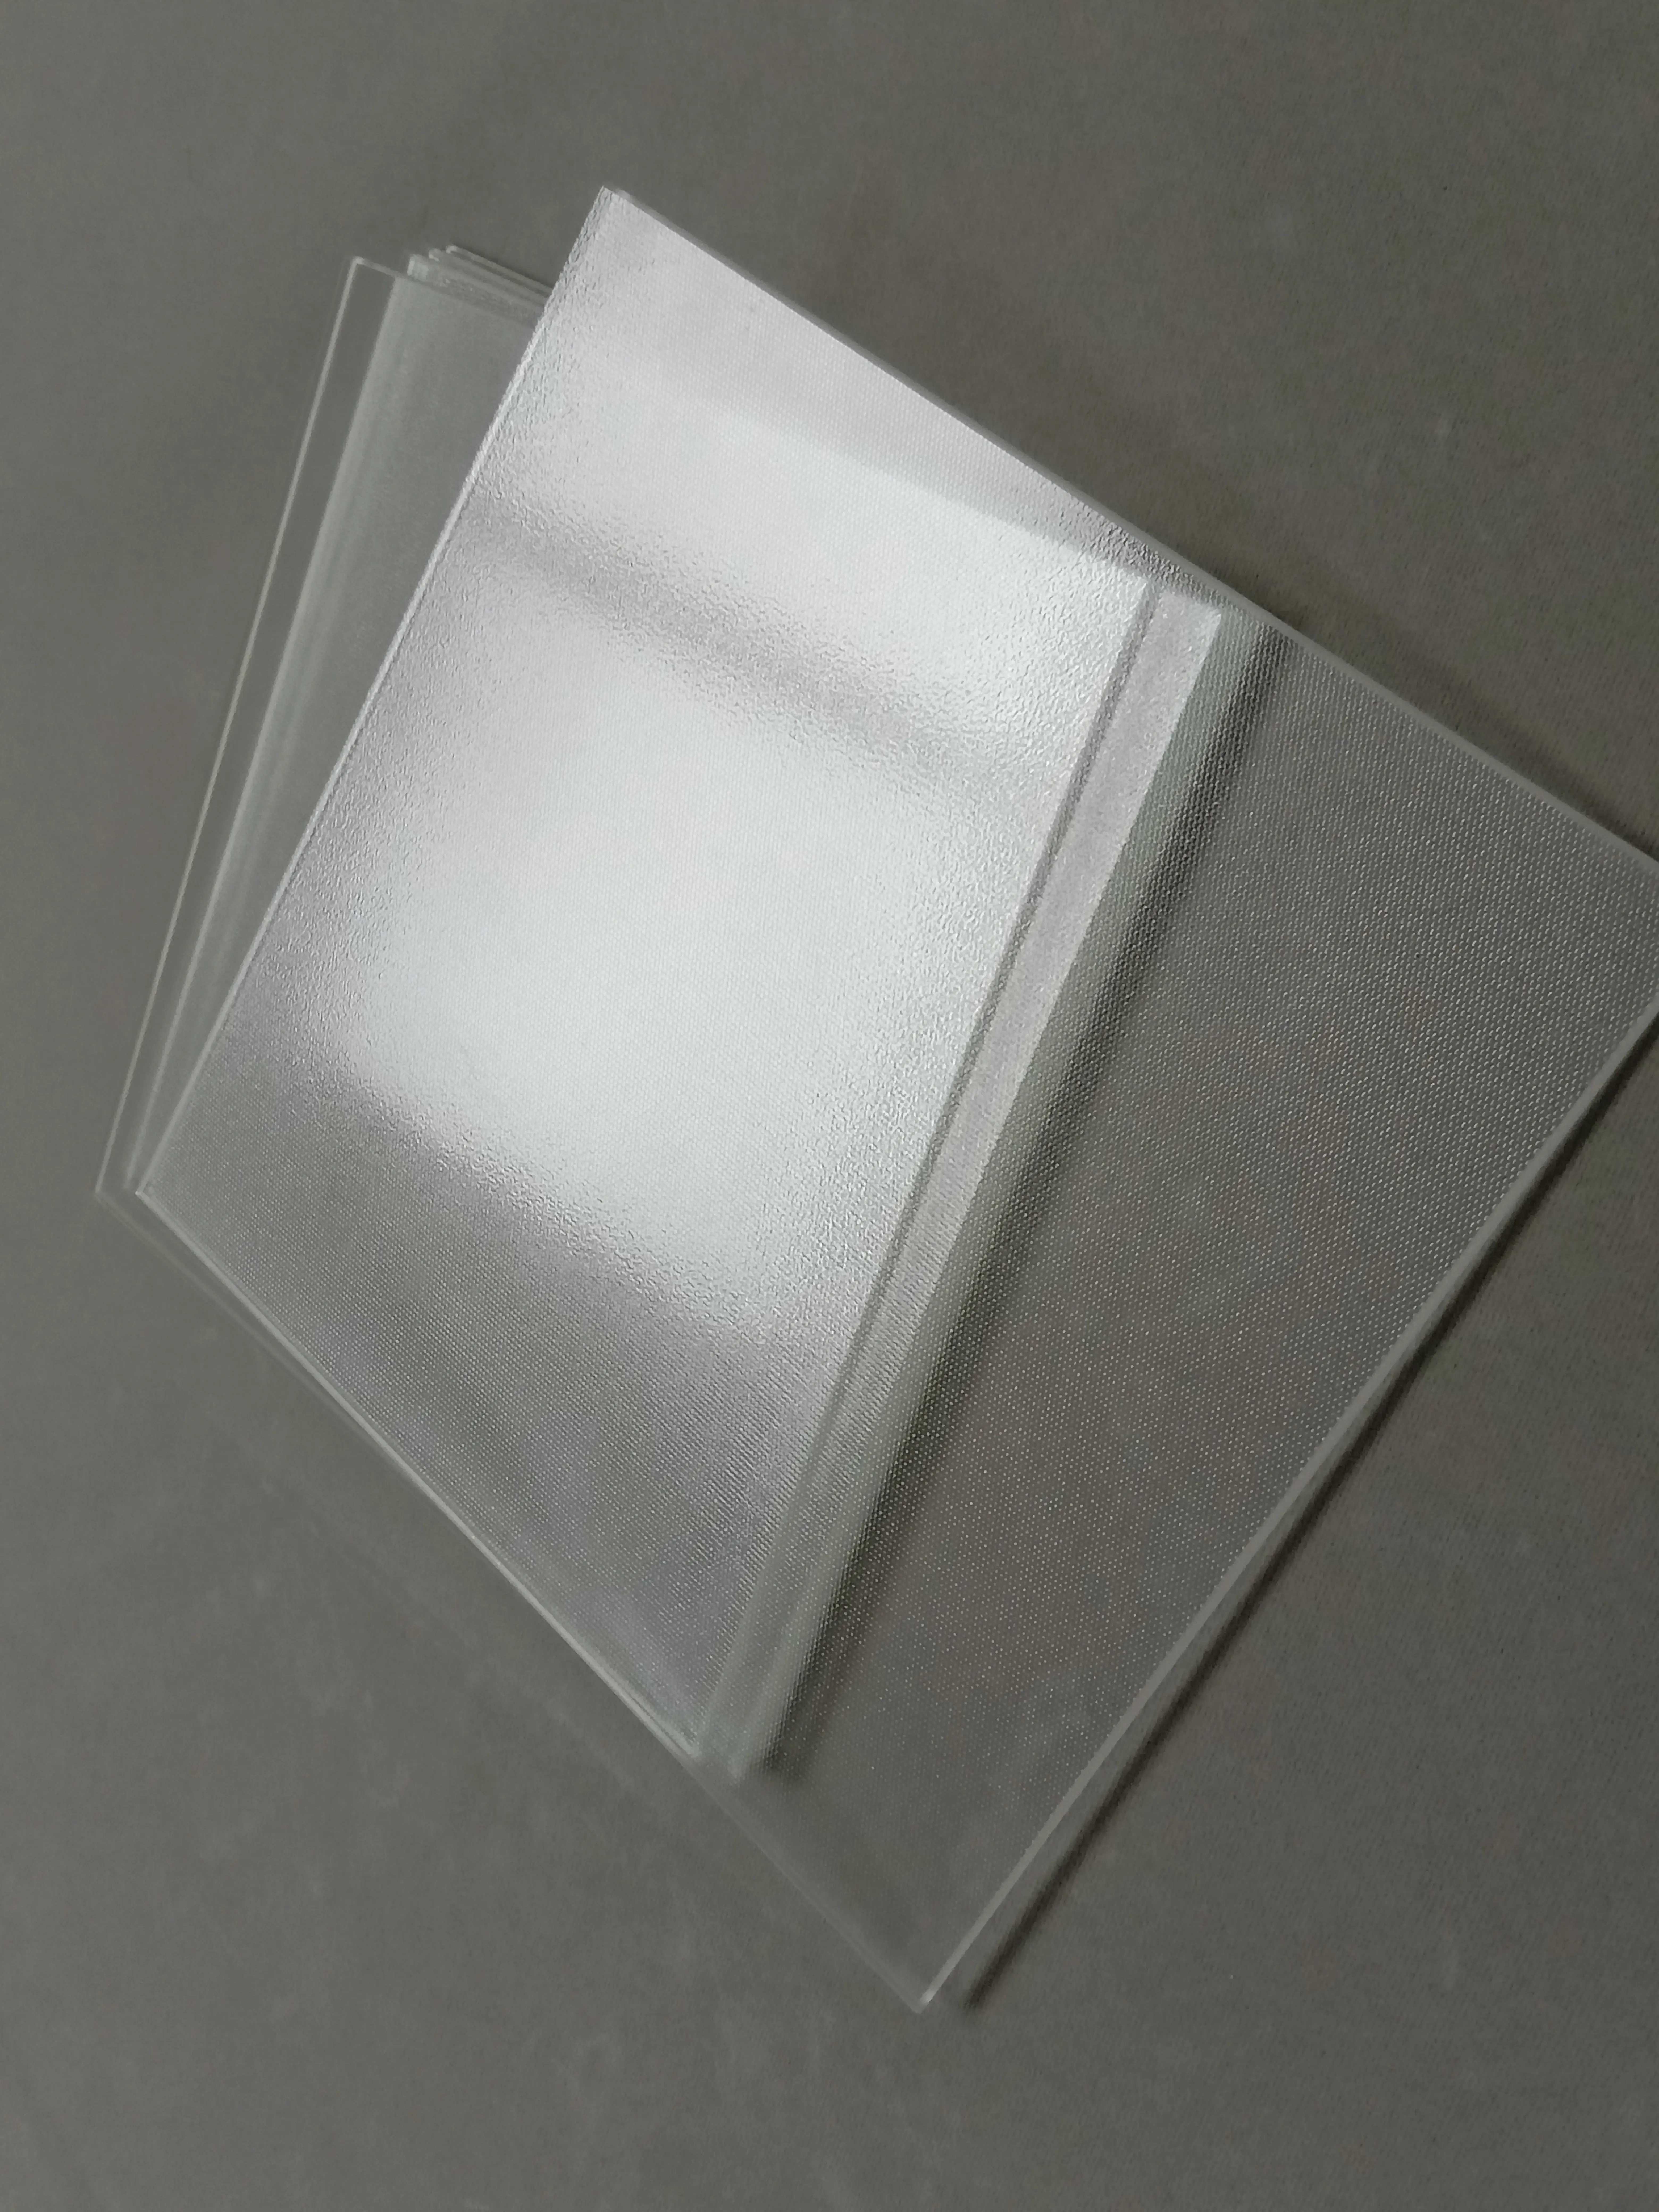 cristal templado para placa solar termica - Qué temperatura soporta el vidrio templado